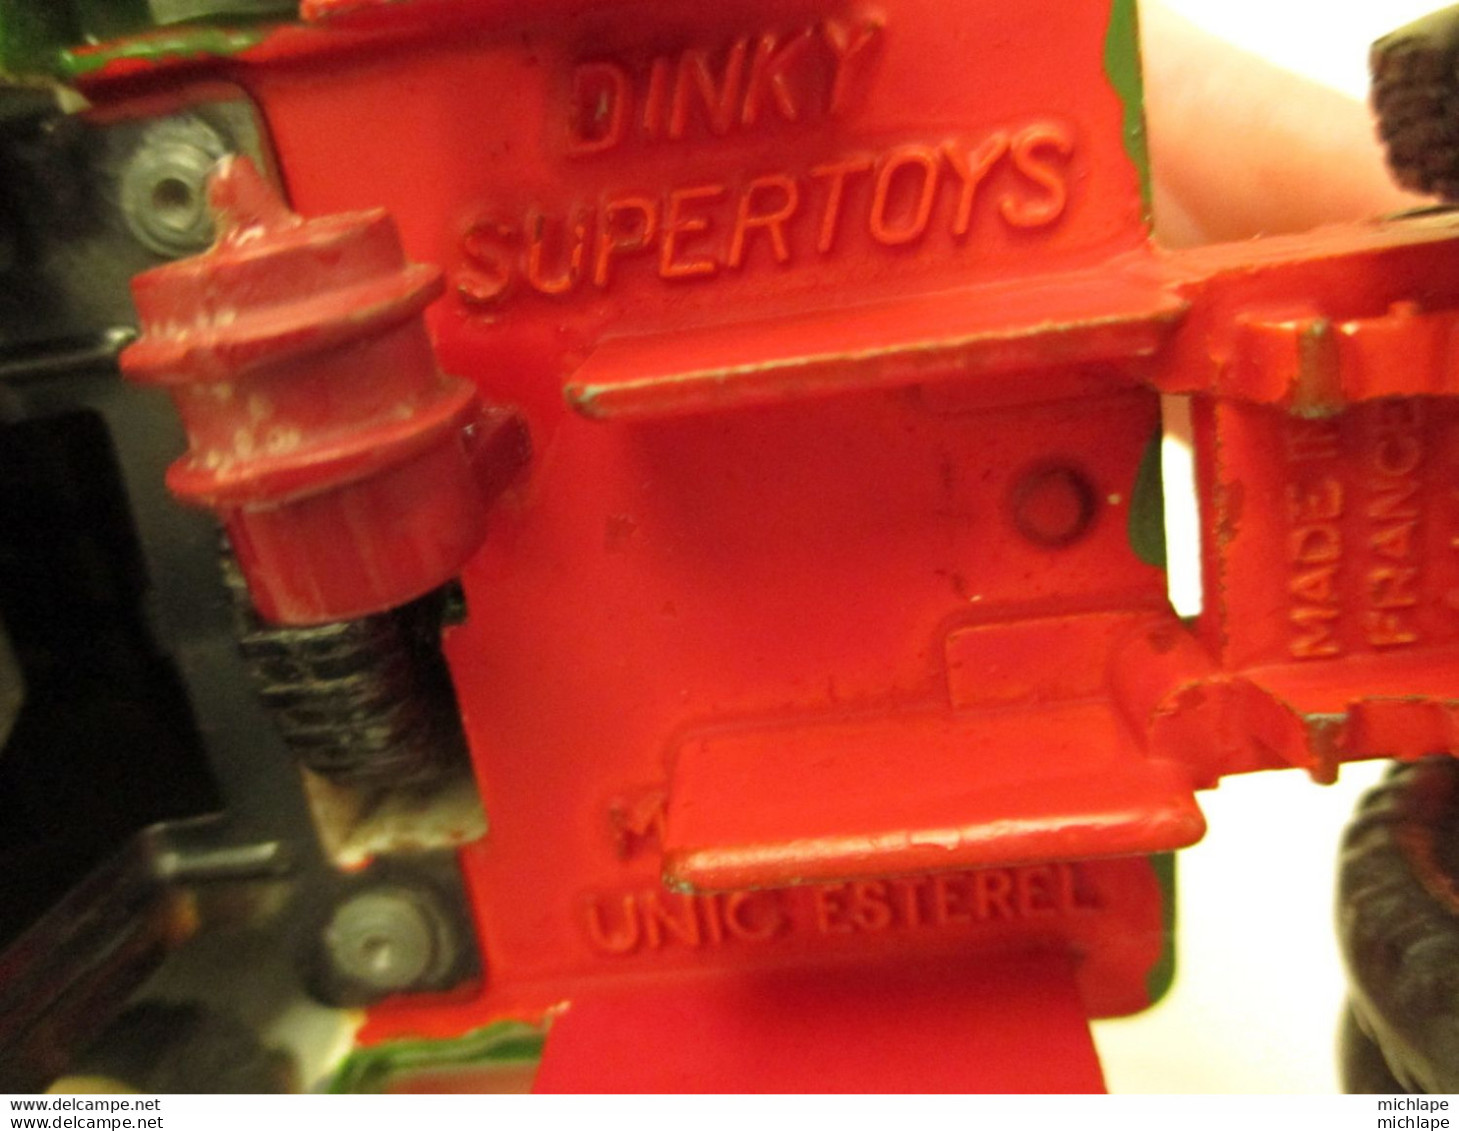 CAMION MINIATURE  1/43 Em - DINKY SUPER TOYS - UNIC ESTEREL  -TRACTEUR - Corgi Toys